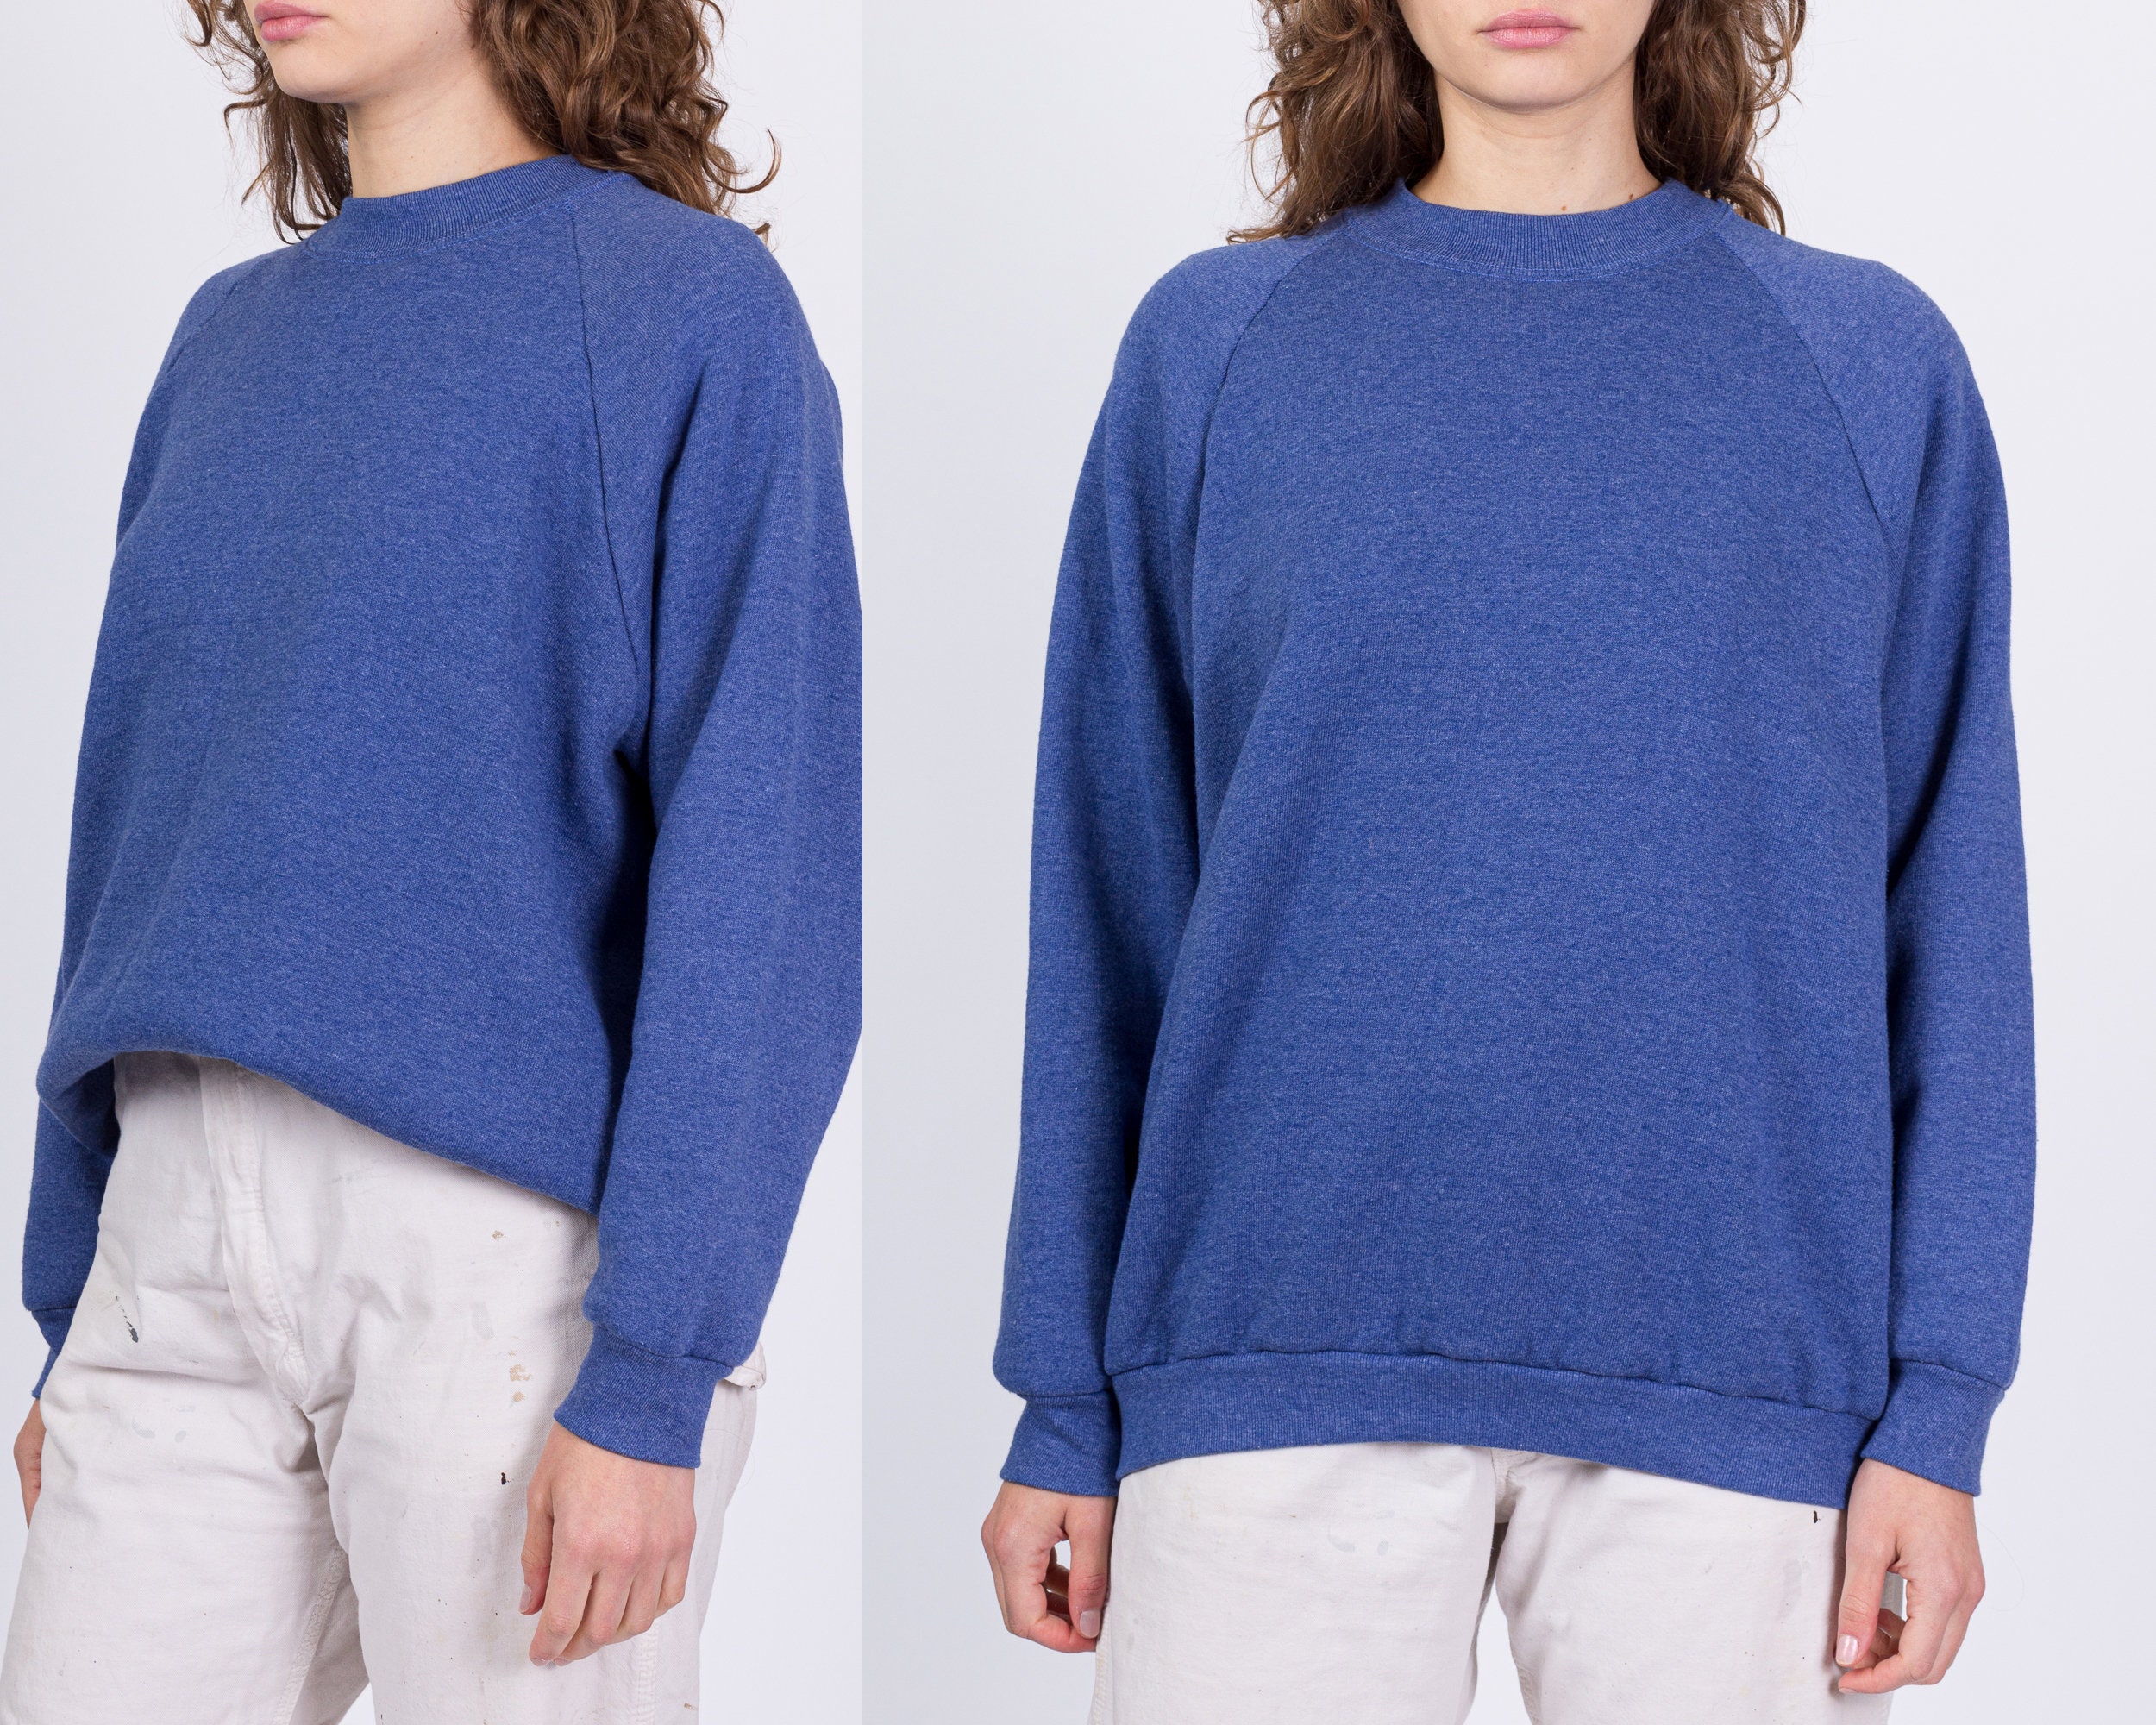 90s Periwinkle Raglan Sleeve Sweatshirt Medium Vintage Blank Plain Slouchy  Crew Neck Pullover 